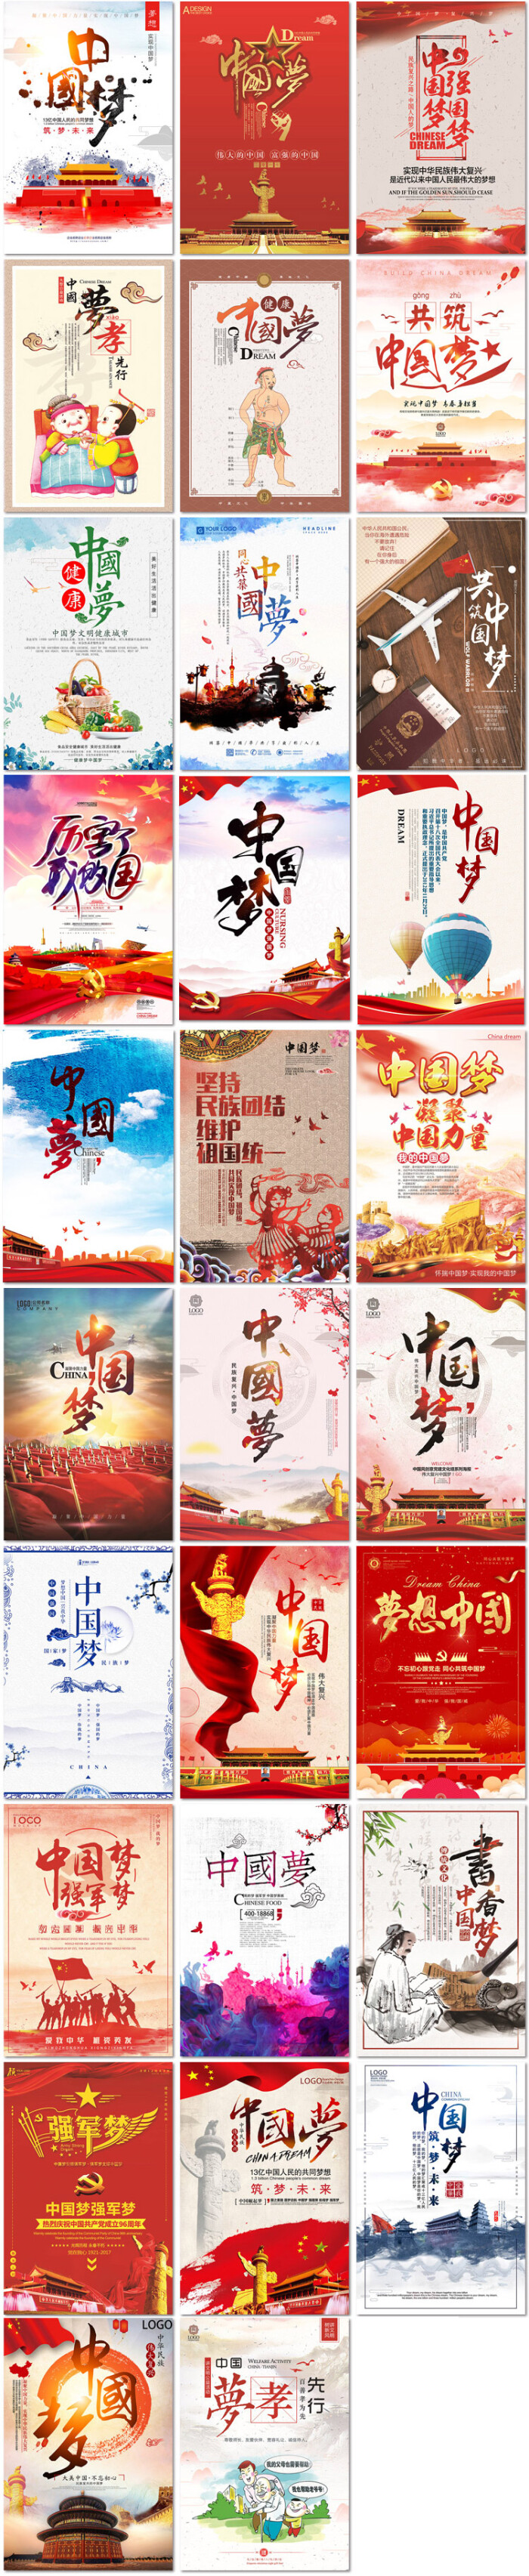 中国梦强国中国红传统文化孝道礼仪健康强军海报psd素材模版设计